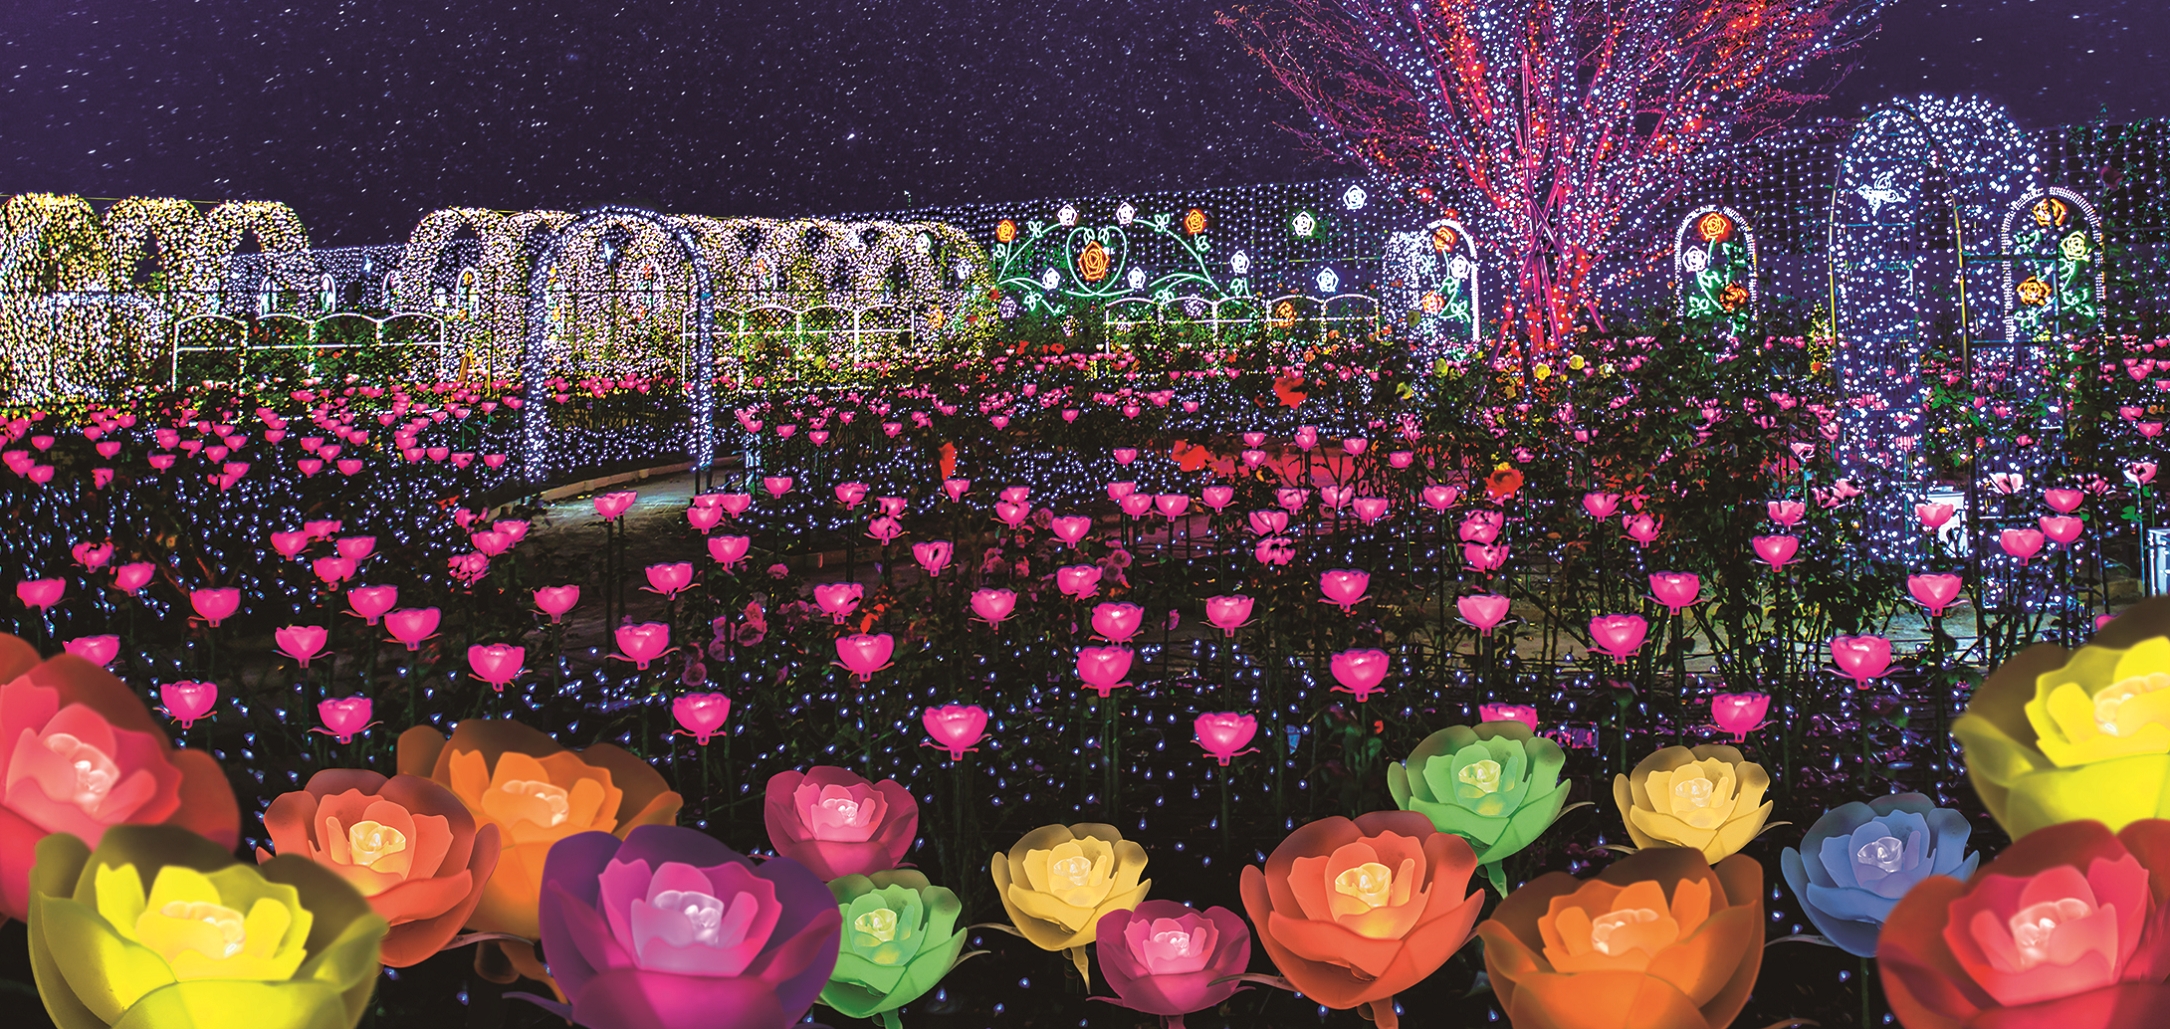 日本三大イルミネーション認定の栄冠に続き あしかがフラワーパークの 光の花 の庭 が2年連続でイルミネーションアワードにおいてランキング全国第1位を獲得 株式会社足利フラワーリゾートのプレスリリース